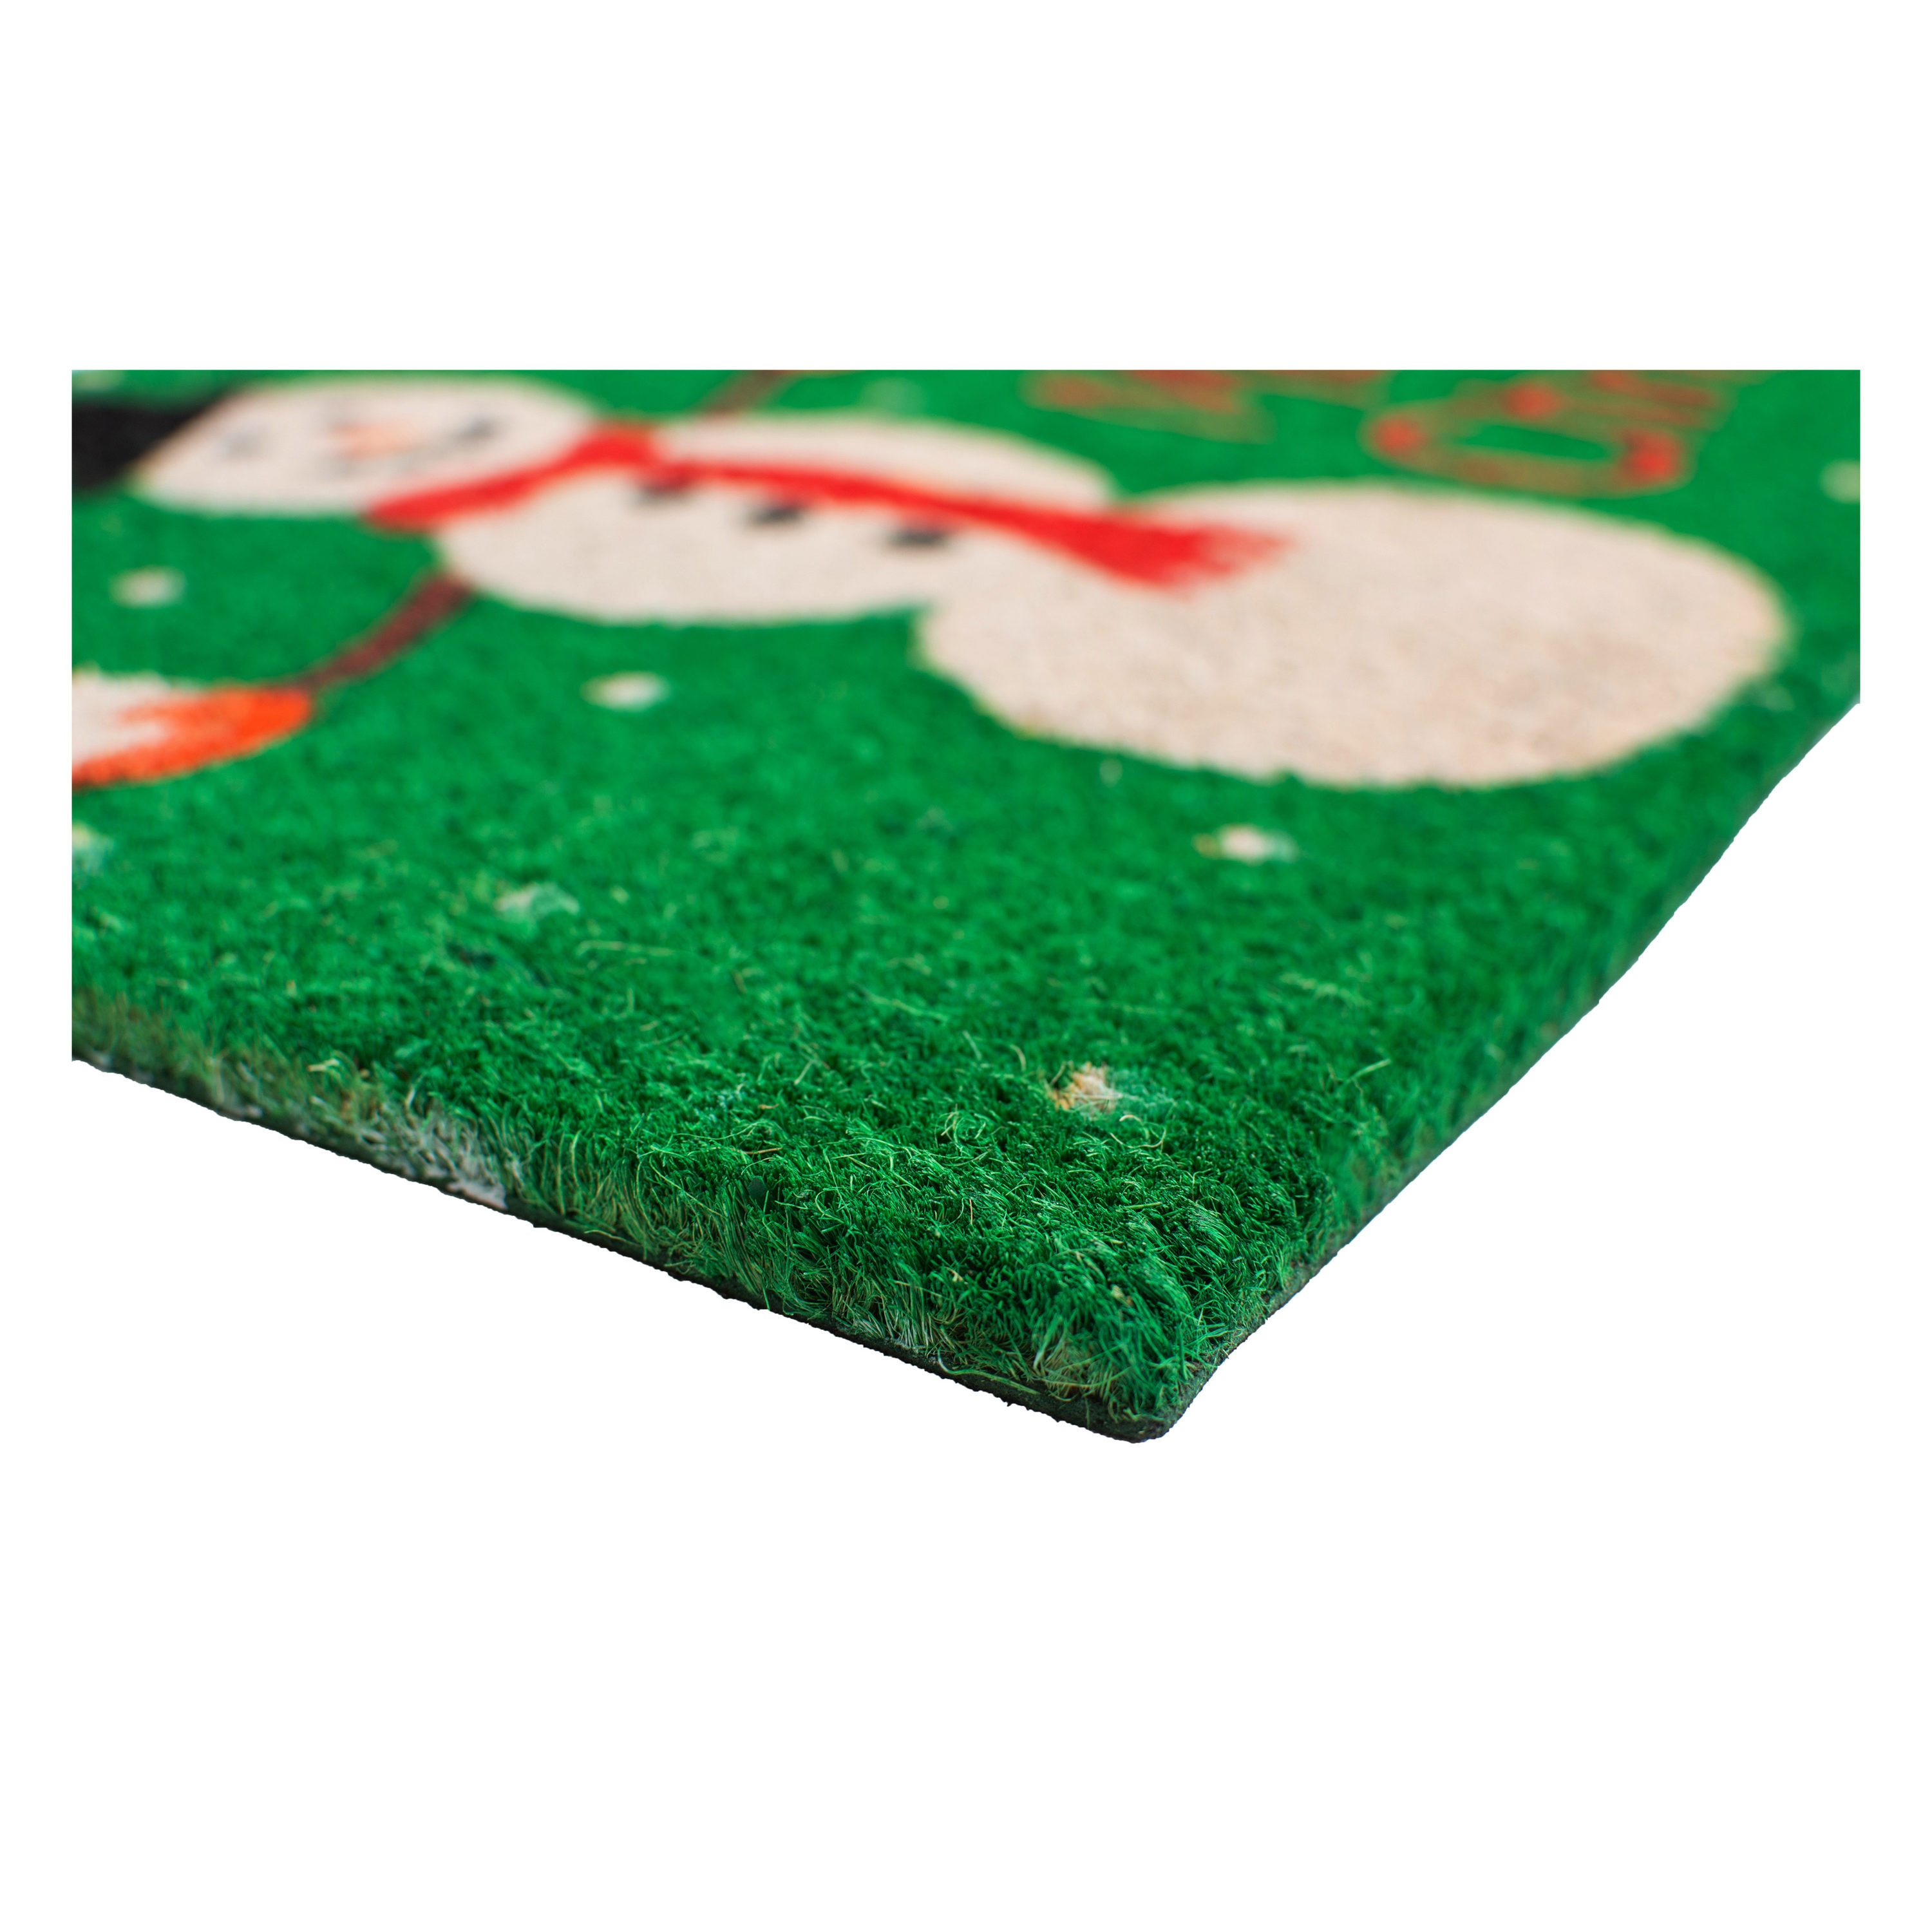 Callowaymills Christmas Snowman Doormat - Indoor/Outdoor Coir Mat for ...